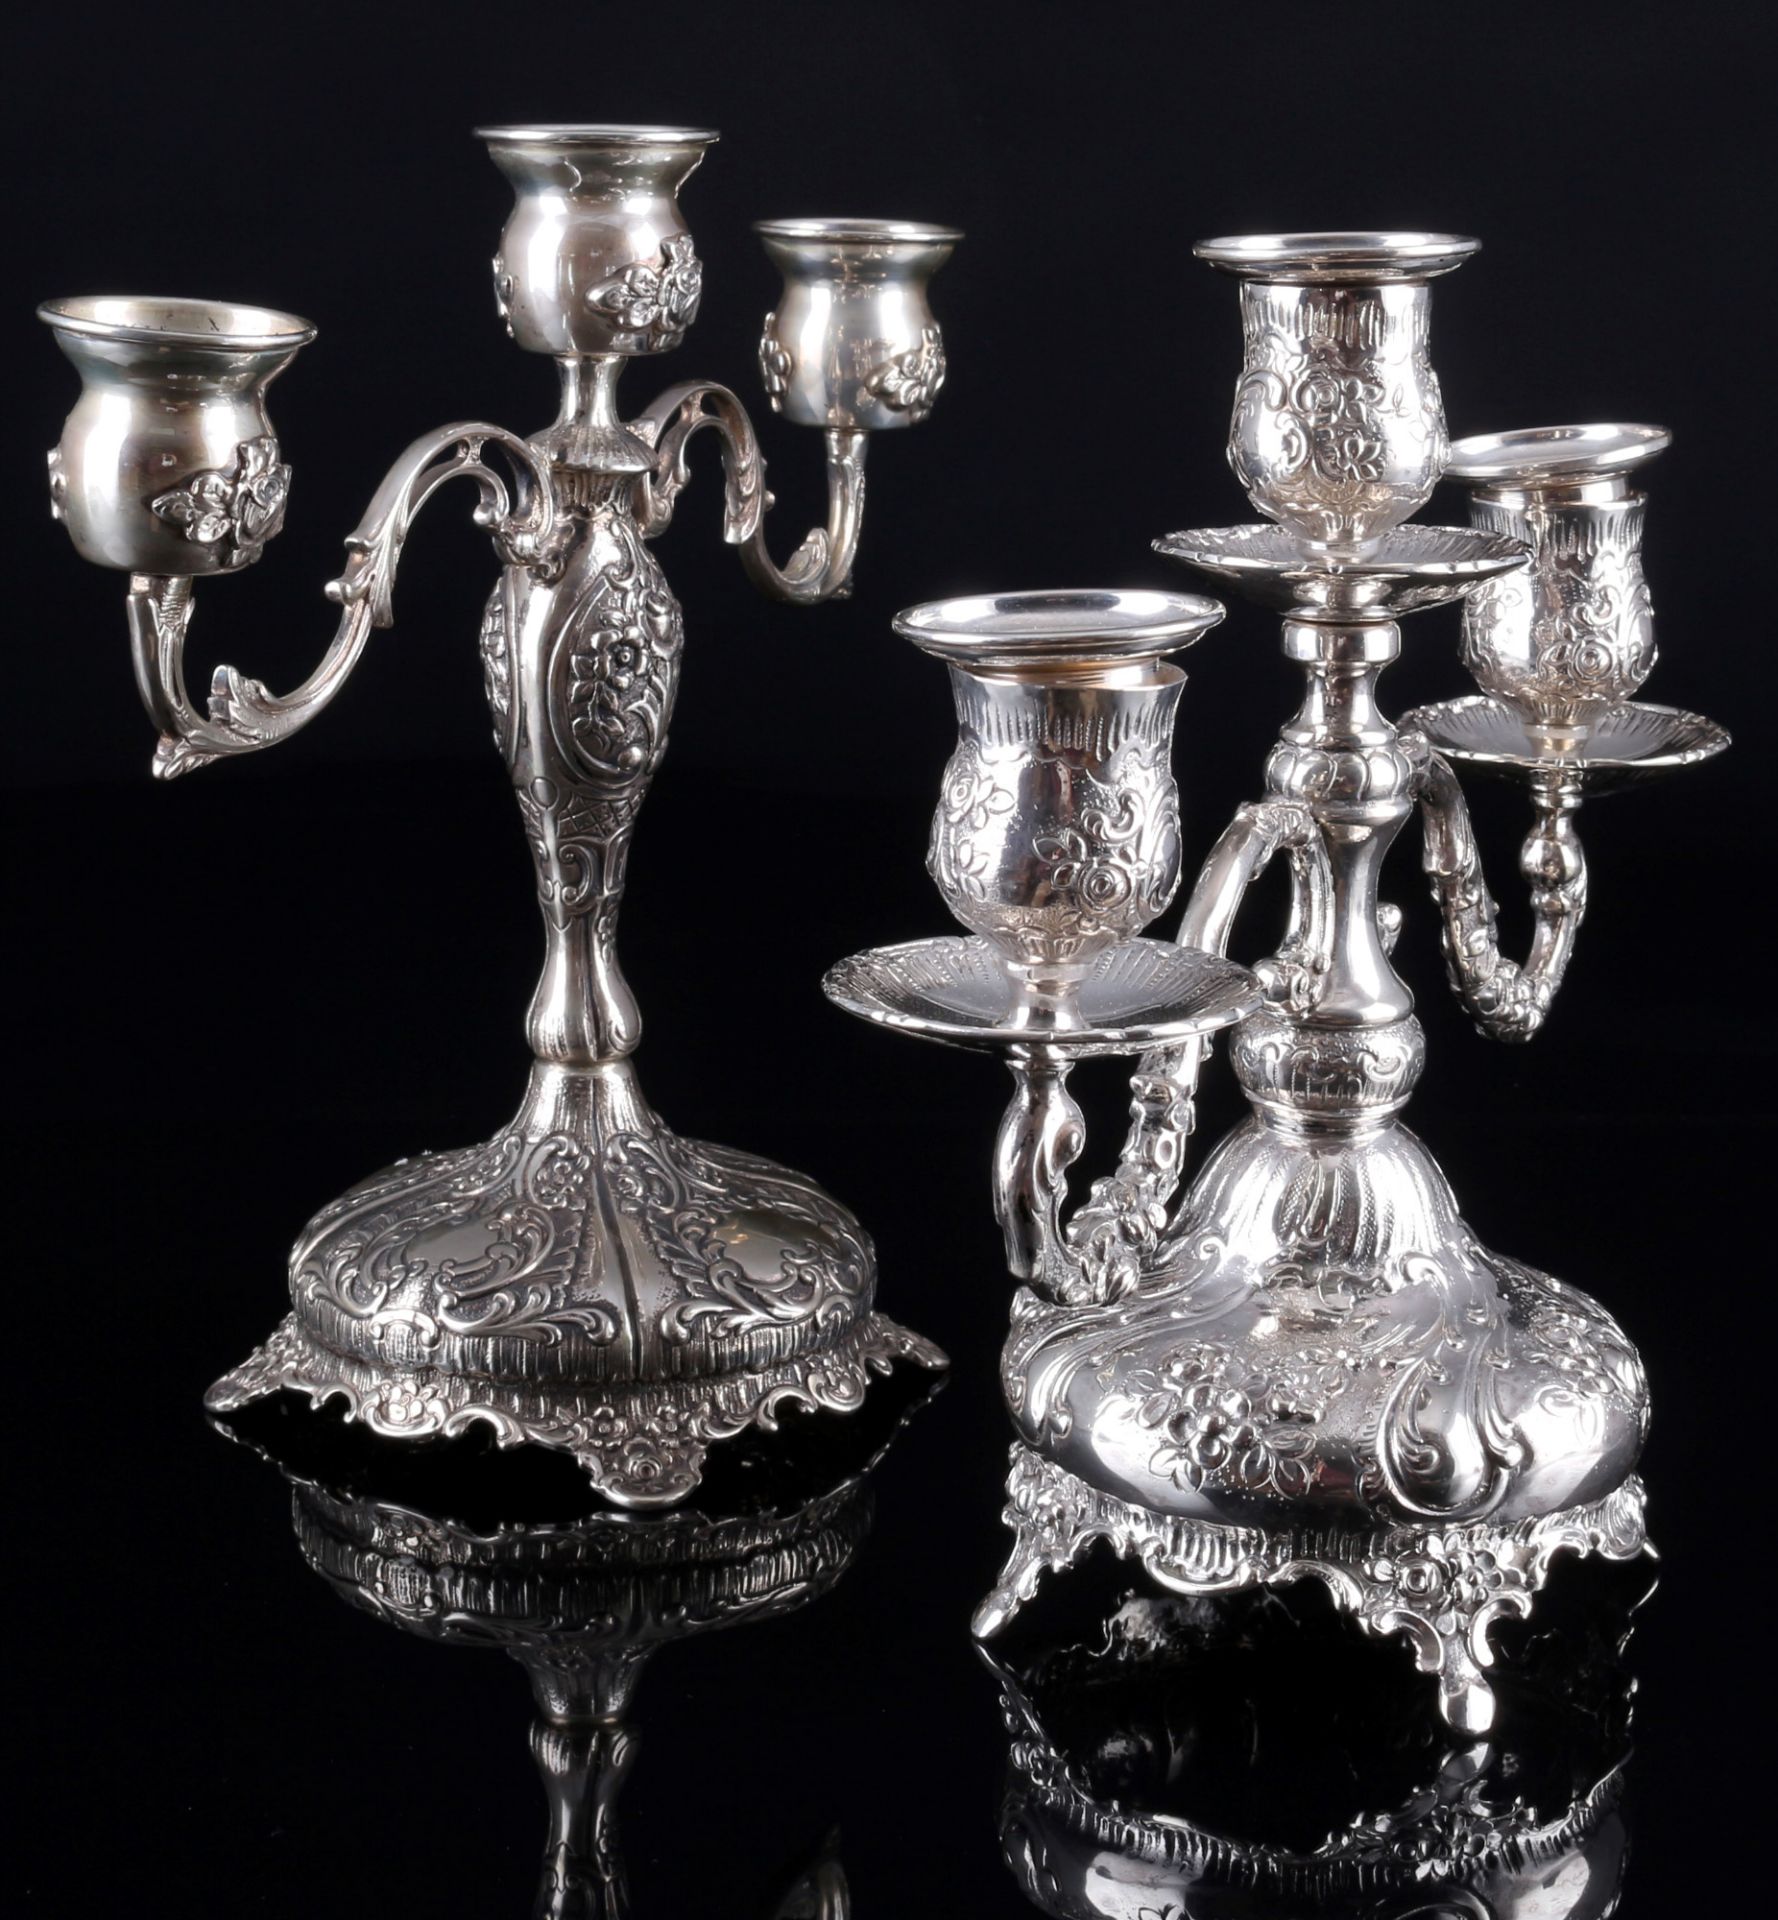 800 Silber 2 Kerzenständer mit Rosendekor, 3-flammig, silver candelabras, - Bild 4 aus 6